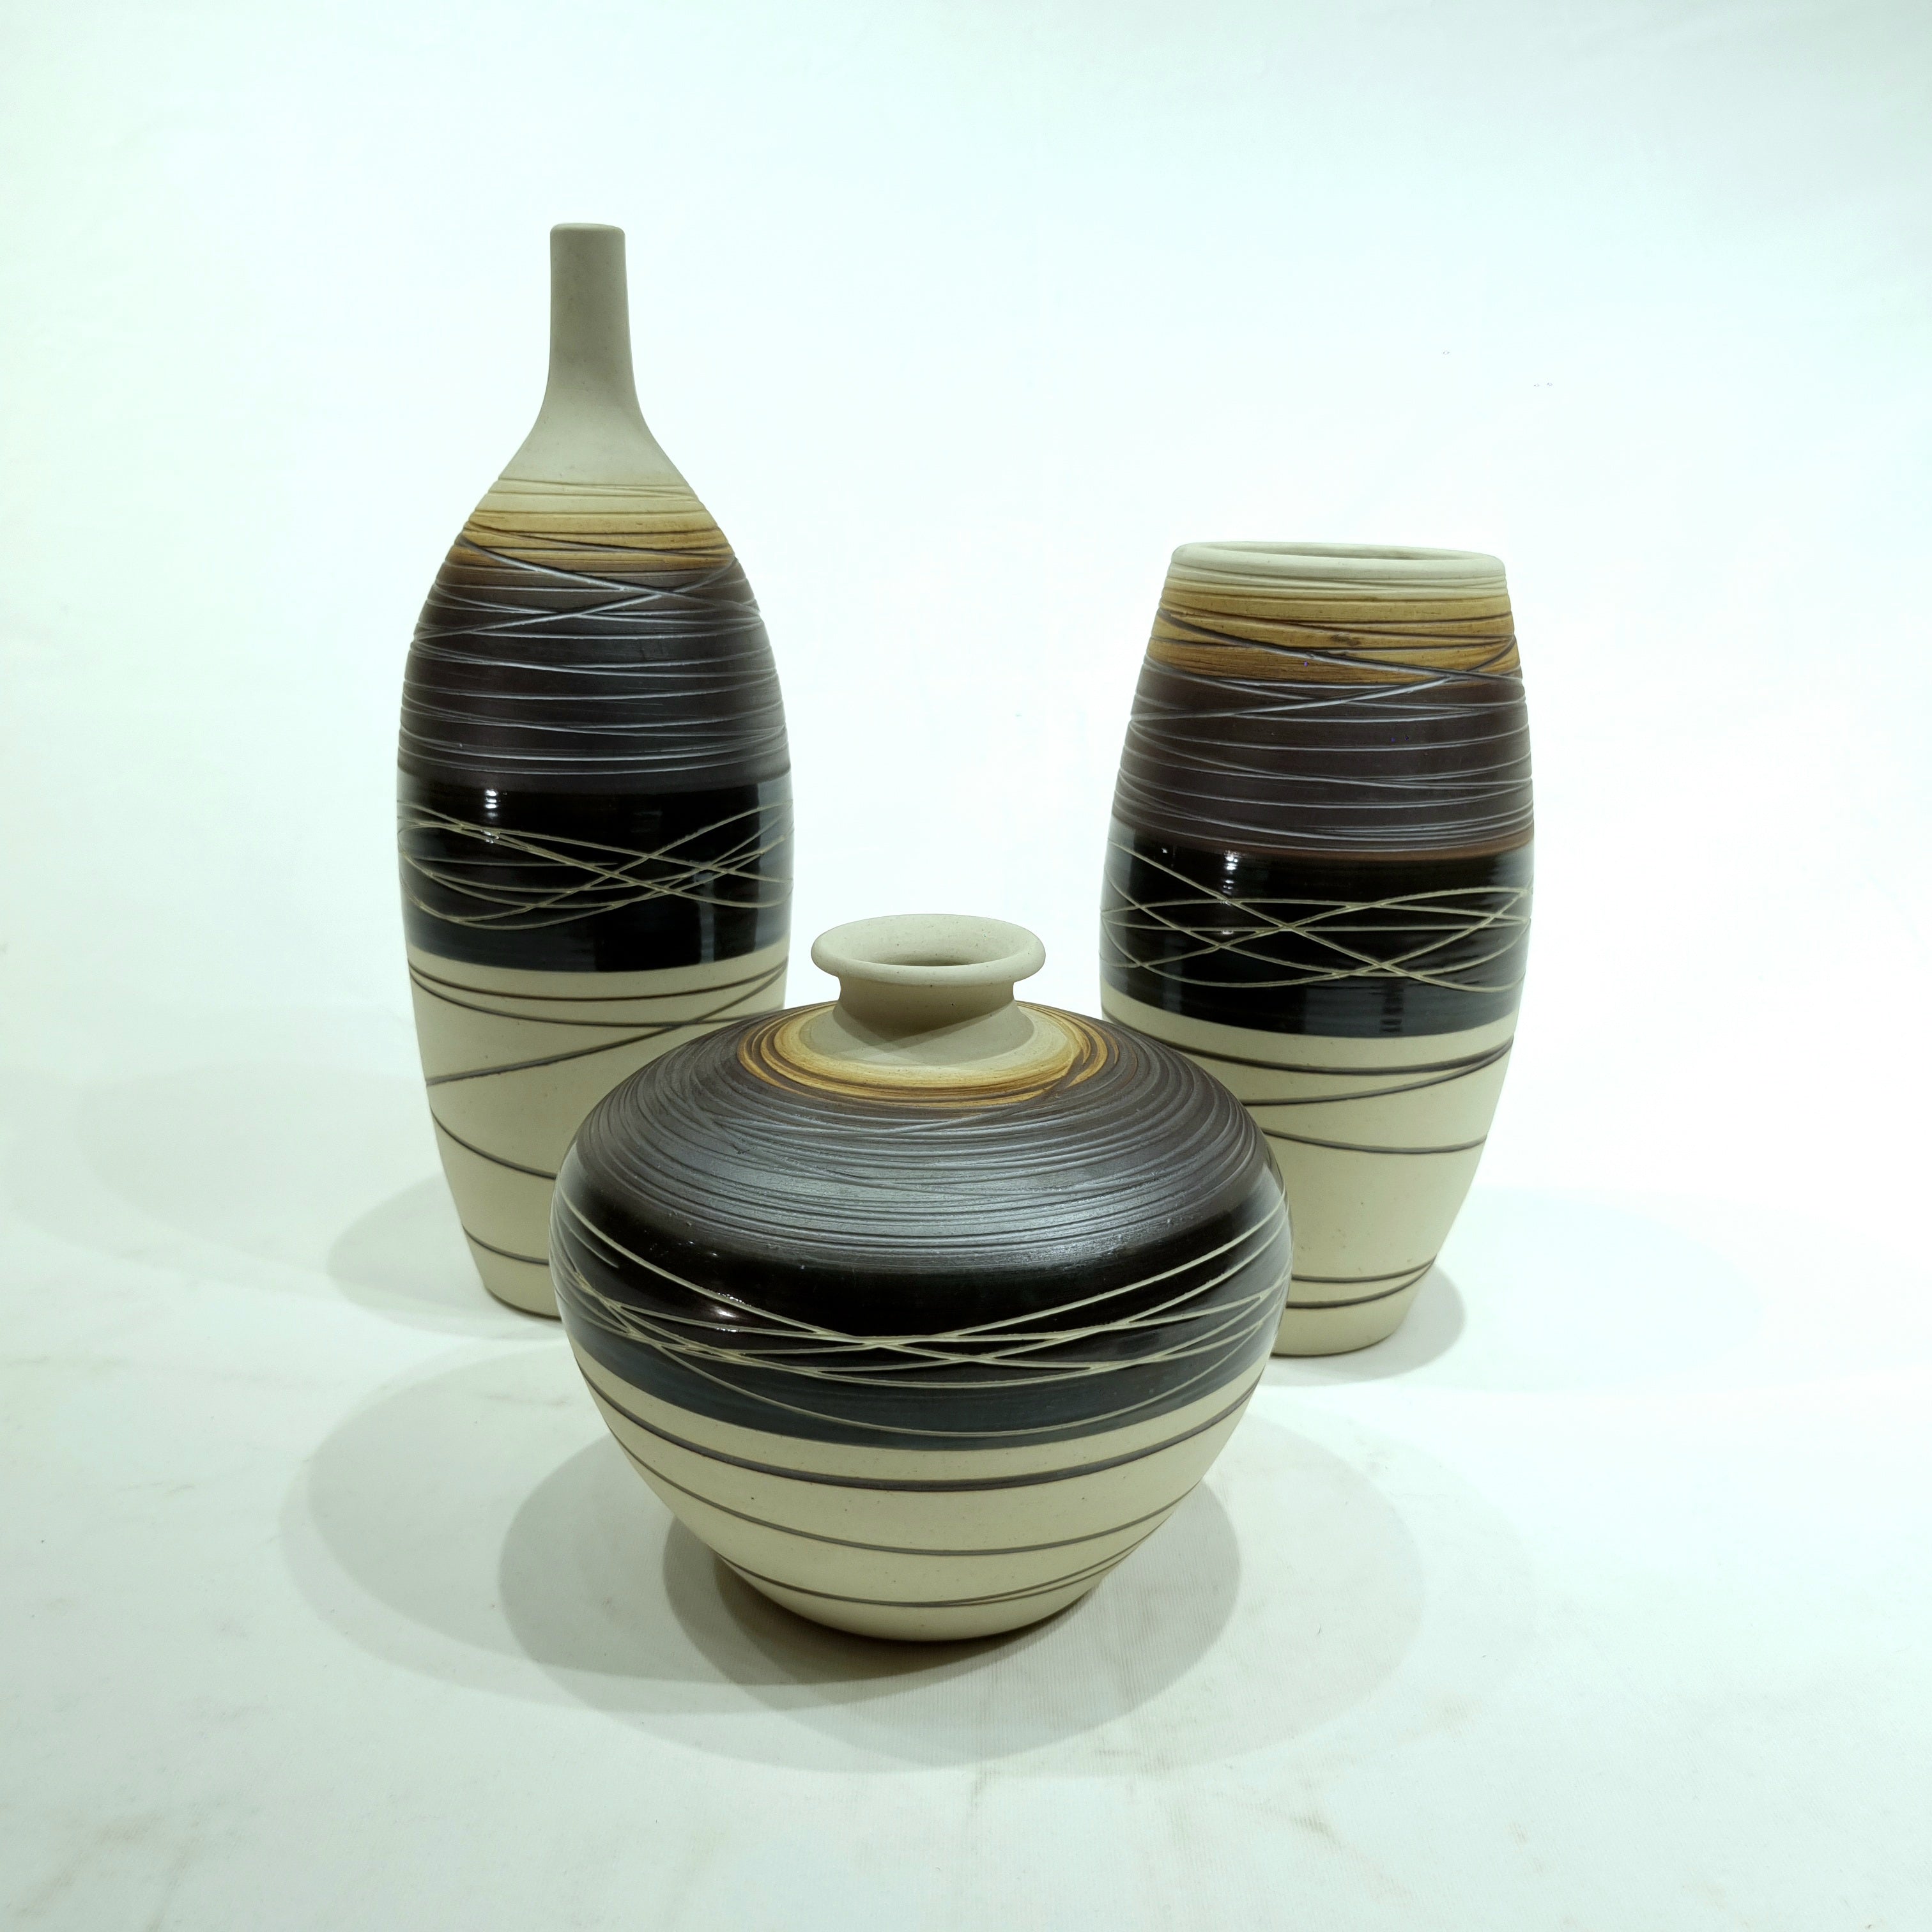 Dlayze Ceramic Vases